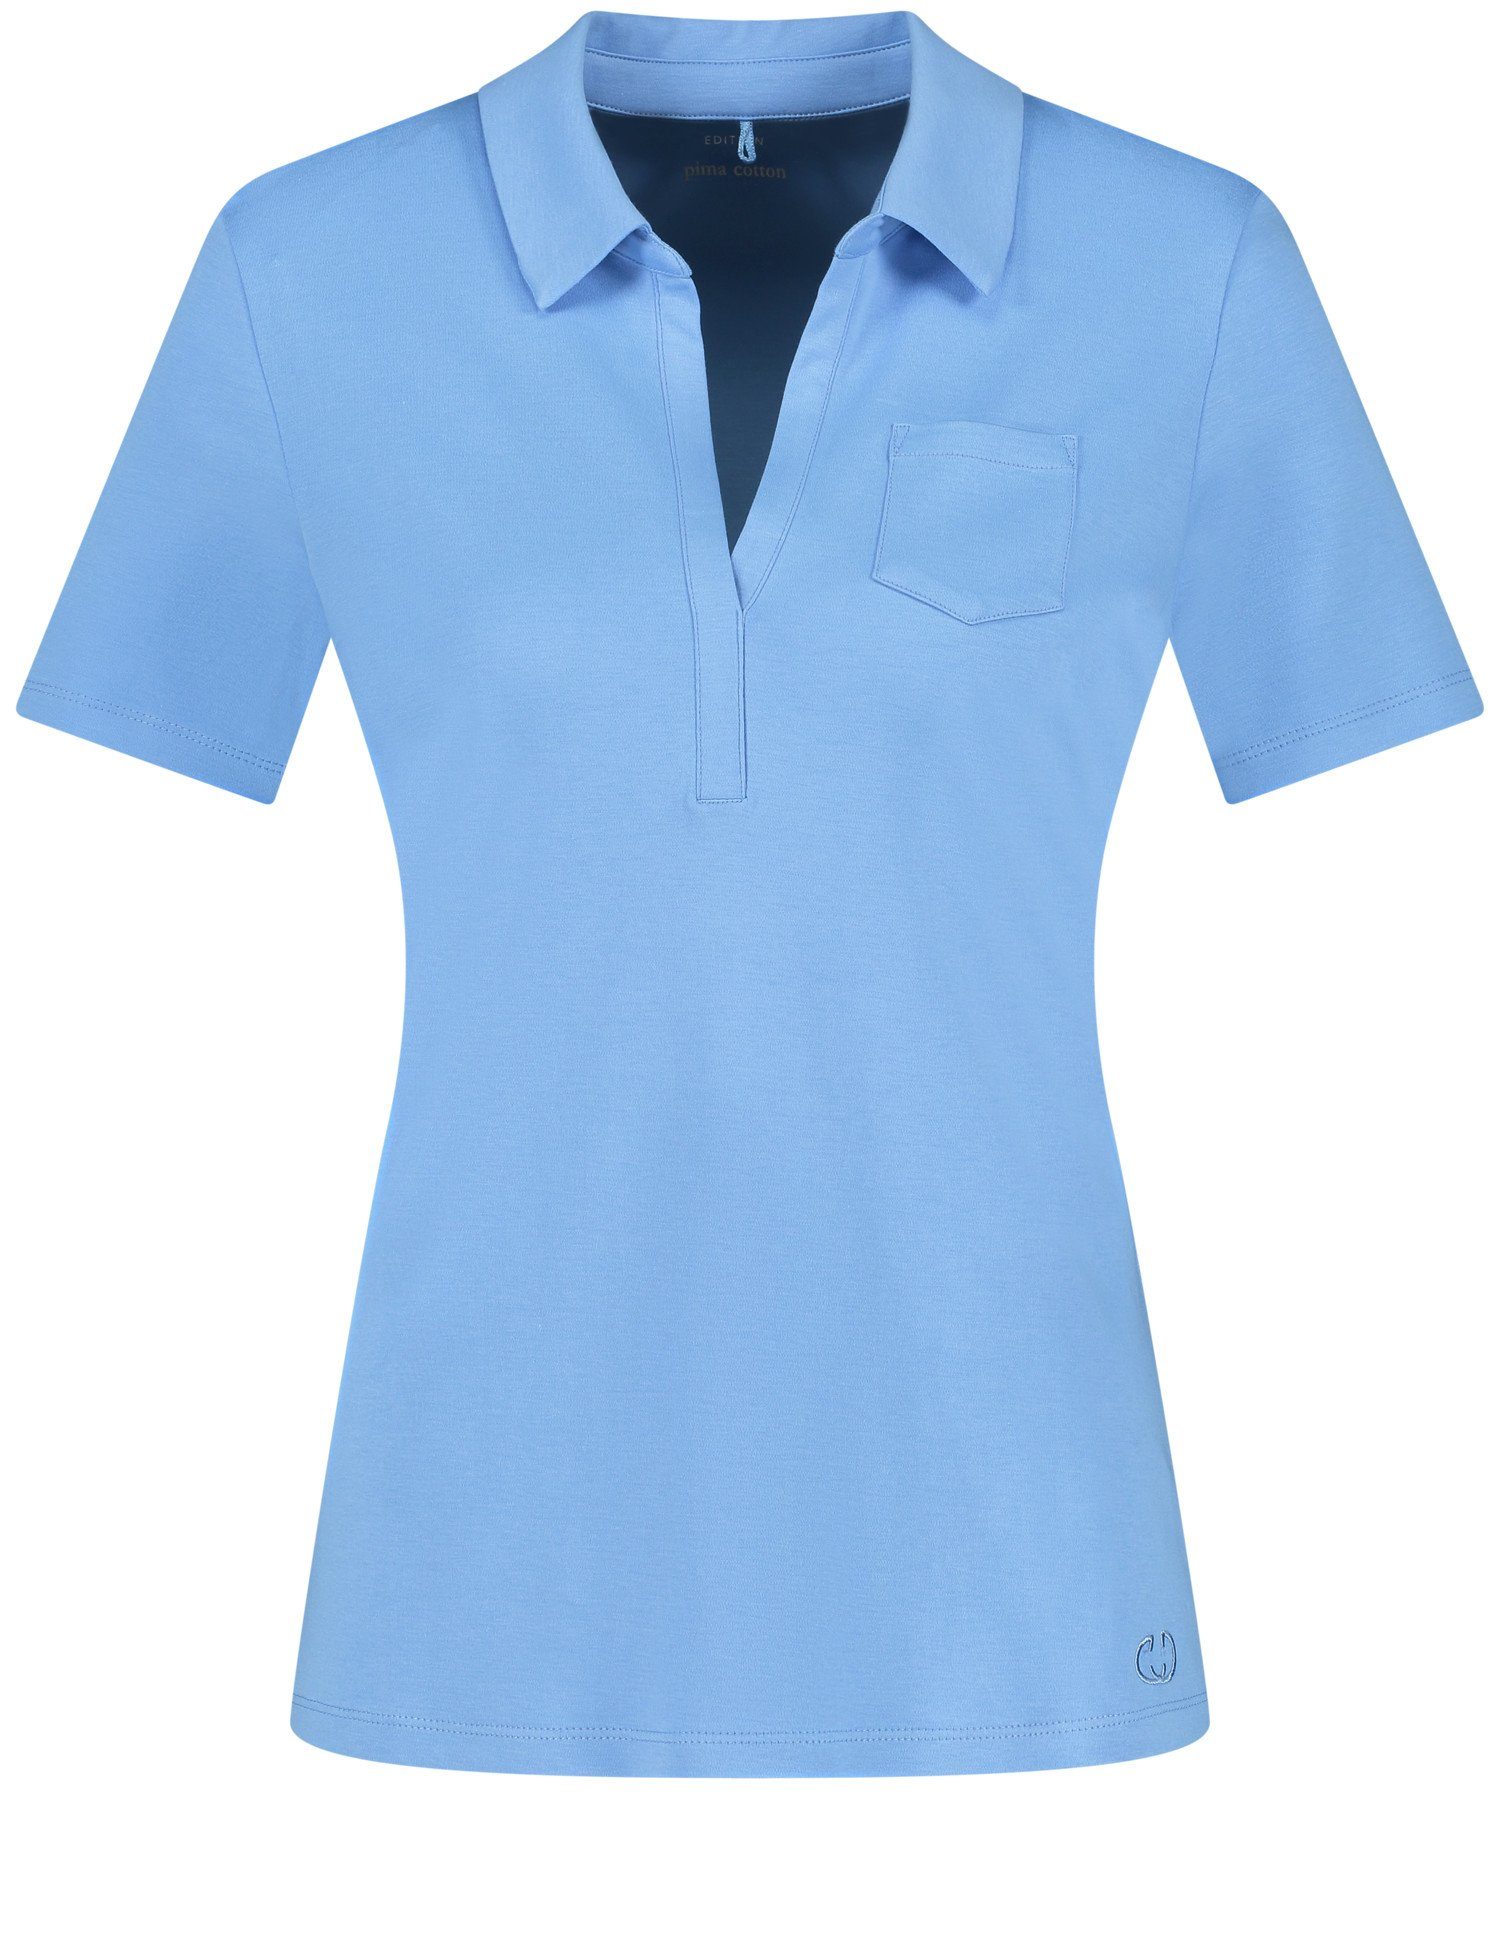 Poloshirt Kurzarm Blue Bright Poloshirt WEBER GERRY